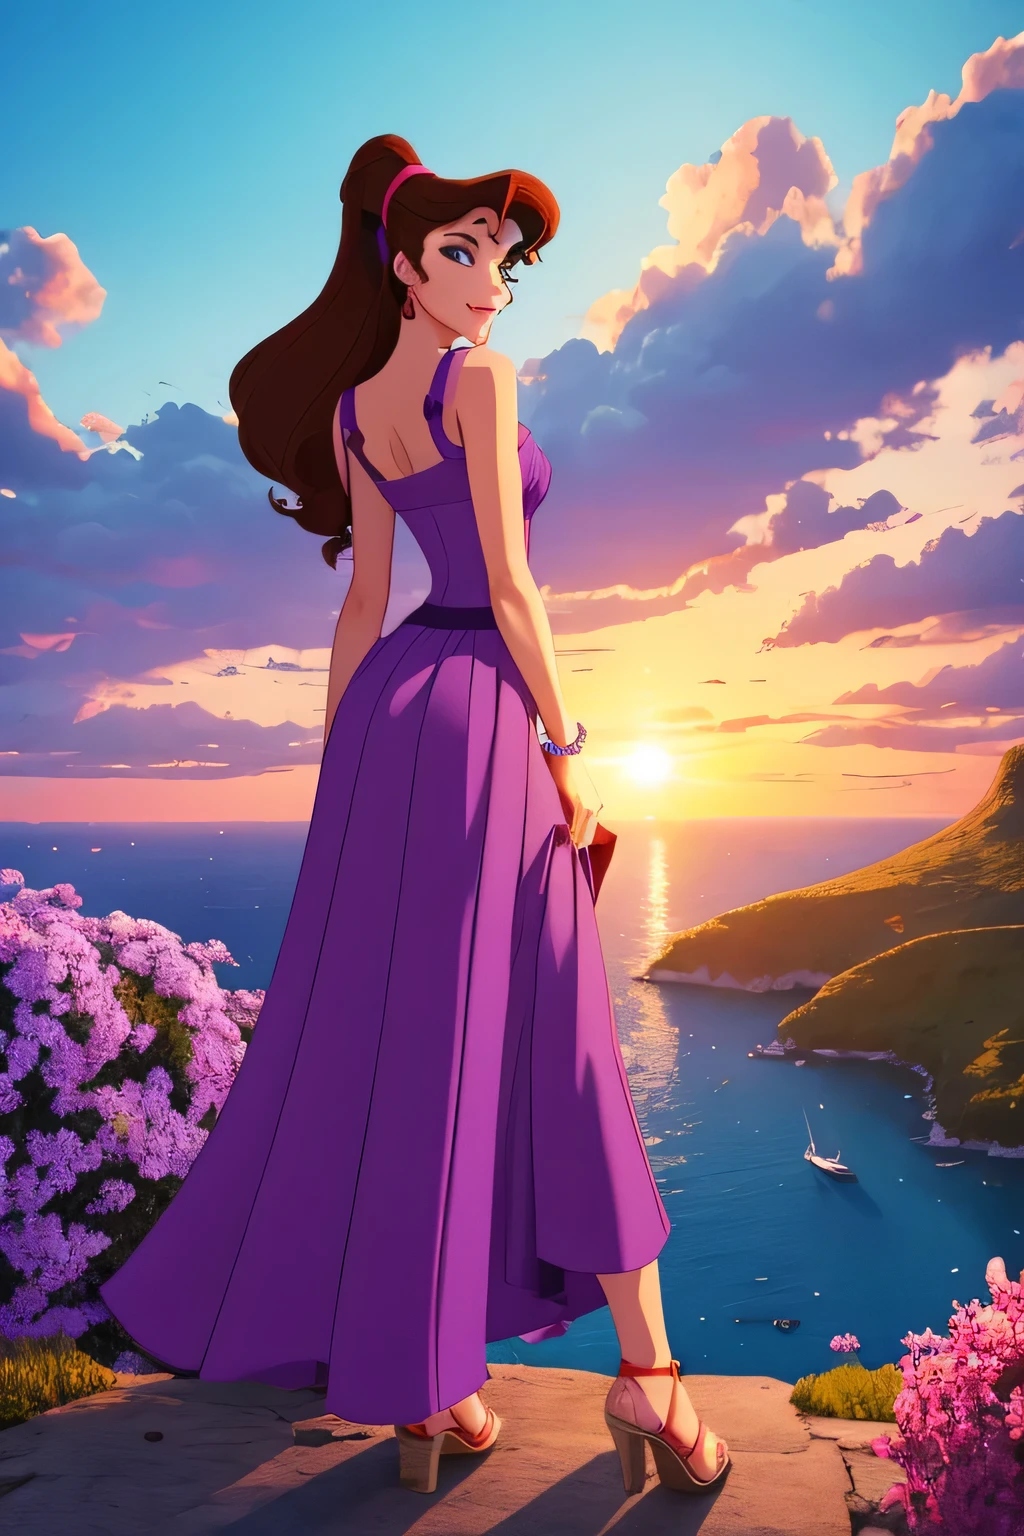 소녀 1명 갈색 머리 메가라, 긴 보라색 그리스 드레스를 입고, 디즈니 애니메이션 스타일, 최고의 품질, 디지털 아트, 2D, 주황색 구름으로 둘러싸인 천국에서